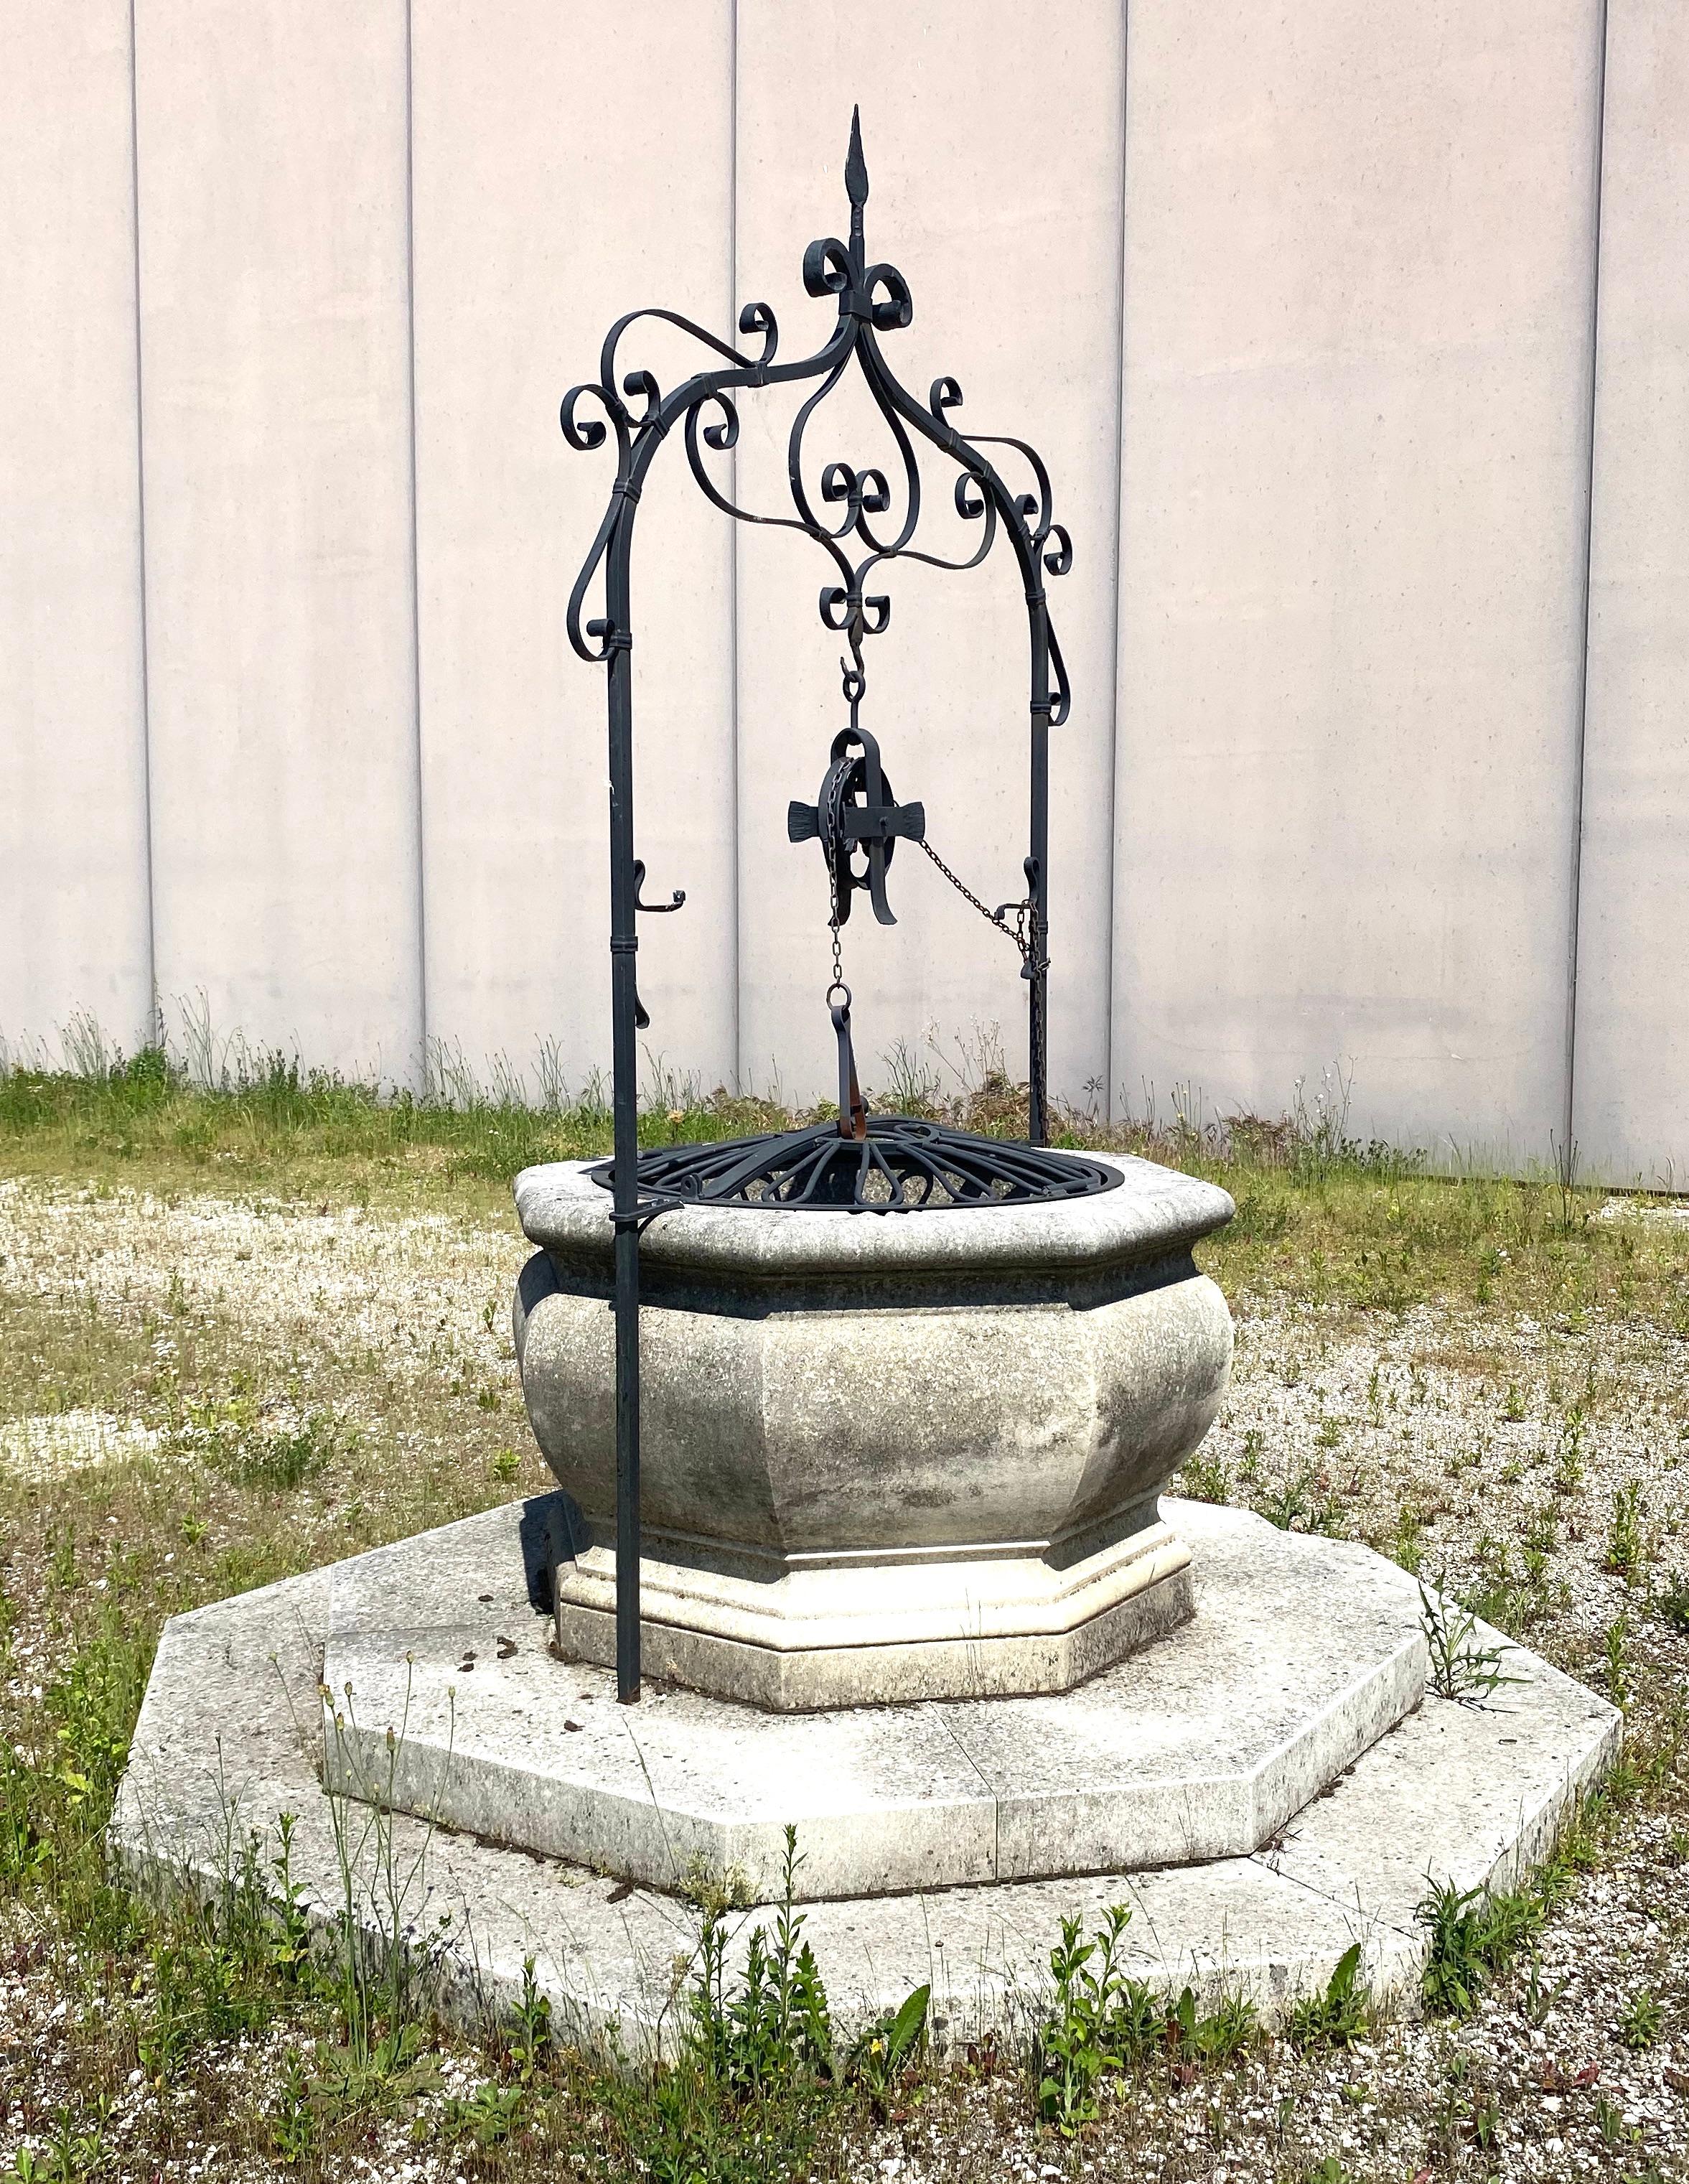 Ein schöner italienischer Wunschbrunnenkopf aus Kalkstein und Schmiedeeisen aus dem Veneto.
Tolle Dekoration für Ihren Garten.
Er kann auch als Pflanzgefäß verwendet werden. Der achteckige Sockel hat einen Durchmesser von 240 cm. Die Höhe mit